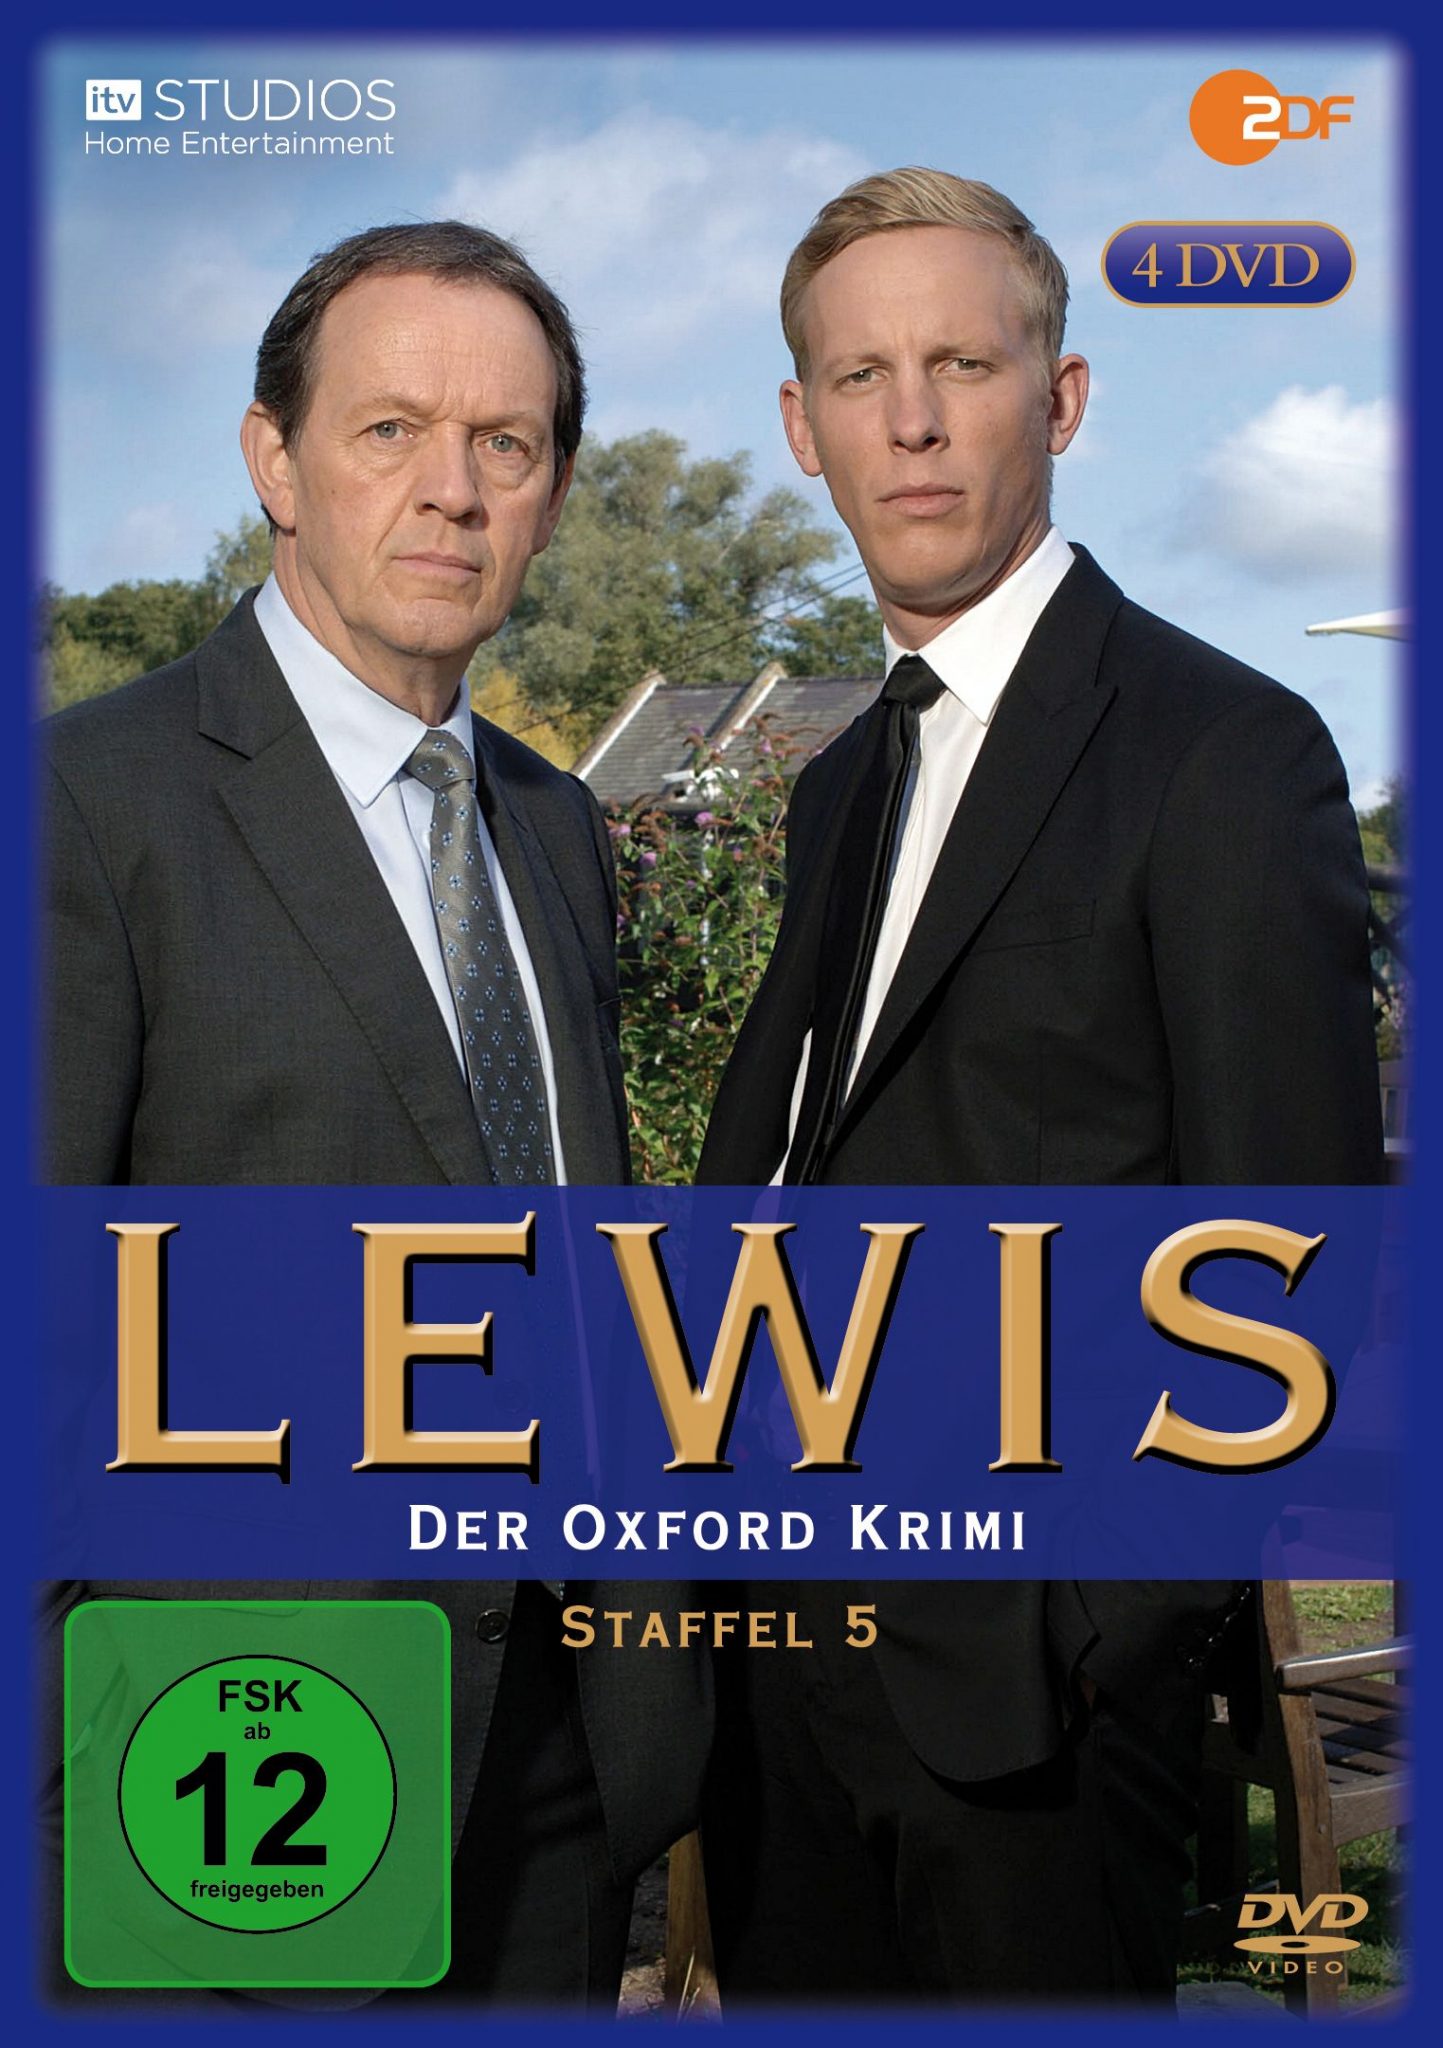 Lewis - Der Oxford Krimi (Staffel 5)